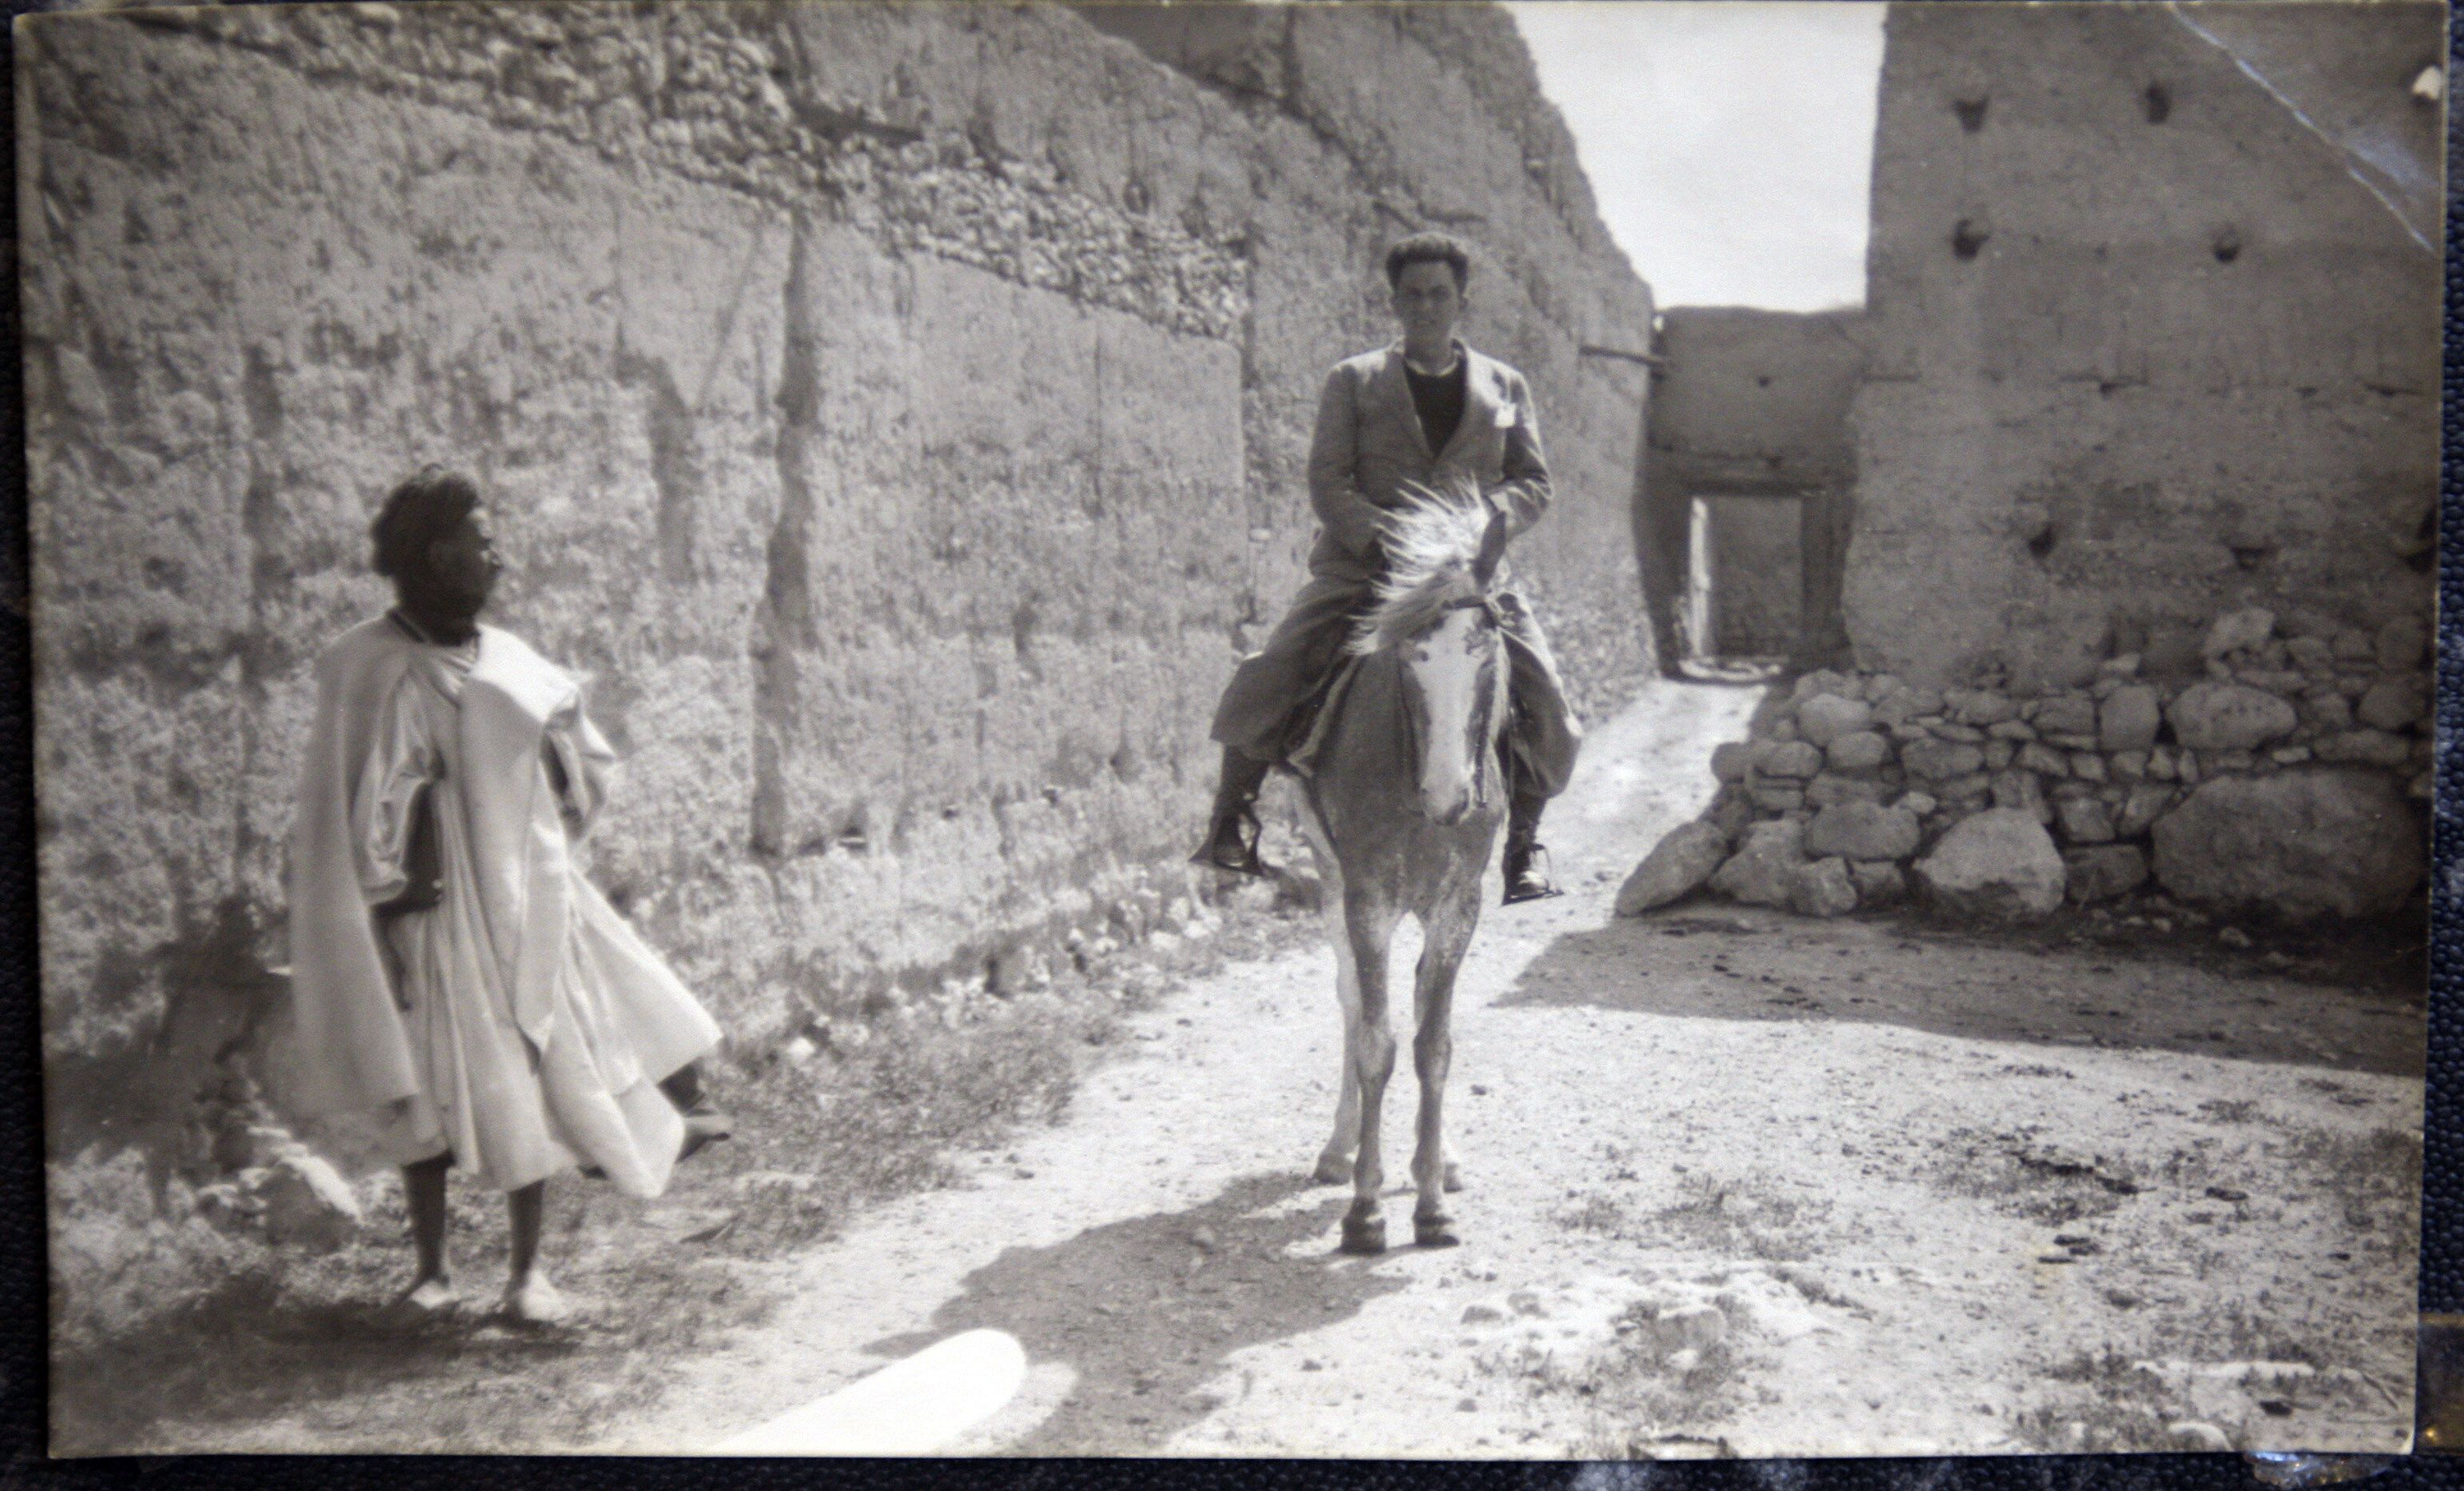 El periodista sevillano Chaves Nogales, en una imagen del fotógrafo Contreras tomada en Sidi Ifni en 1934 durante un viaje para una serie de reportajes para el diario 'Ahora'.